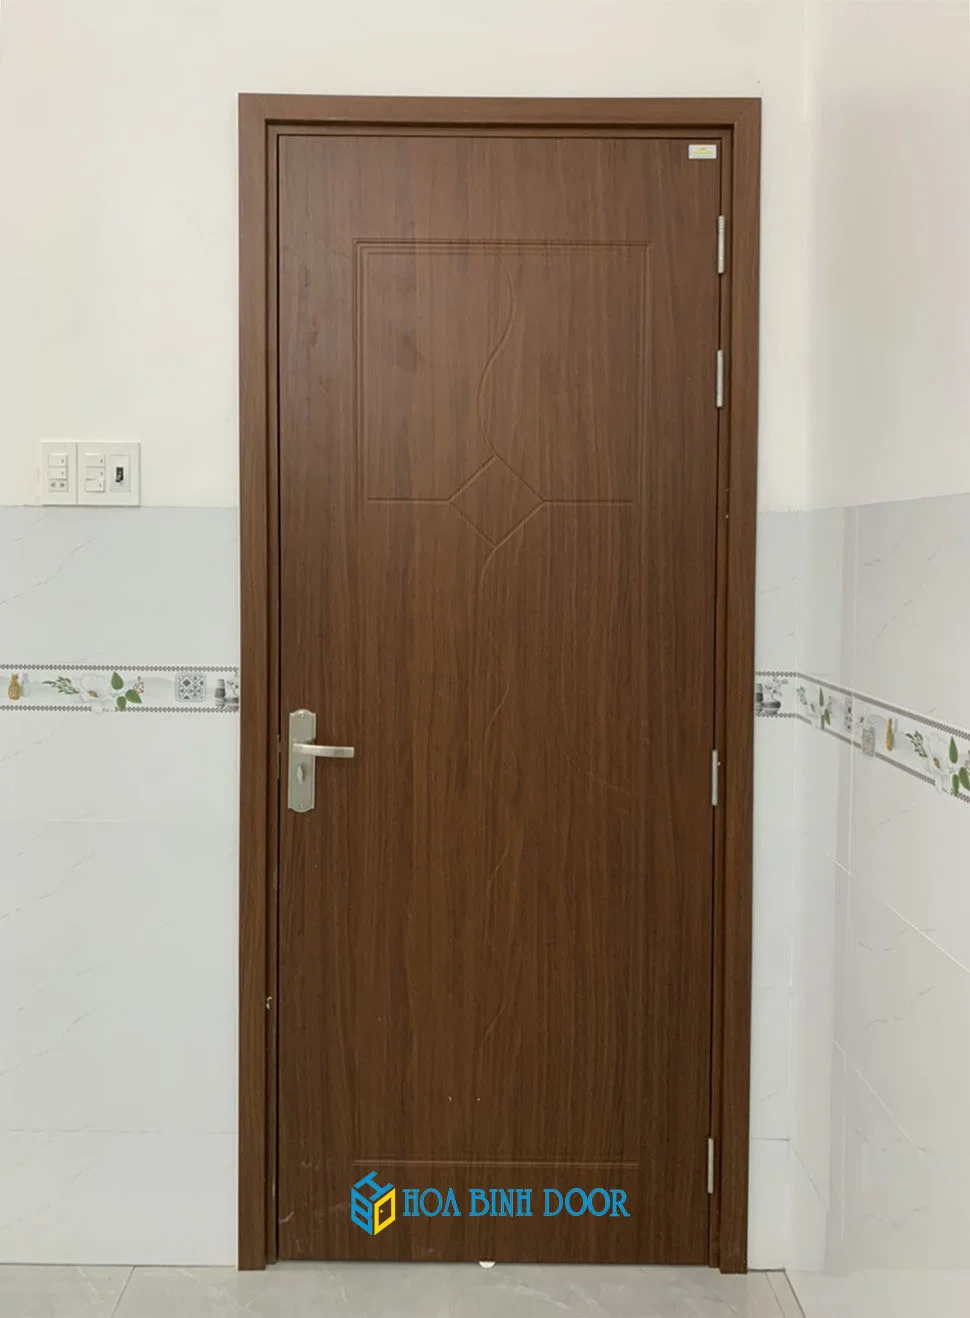 Giá cửa nhựa giả gỗ tại Gia Lai – Cửa phòng ngủ, toilet